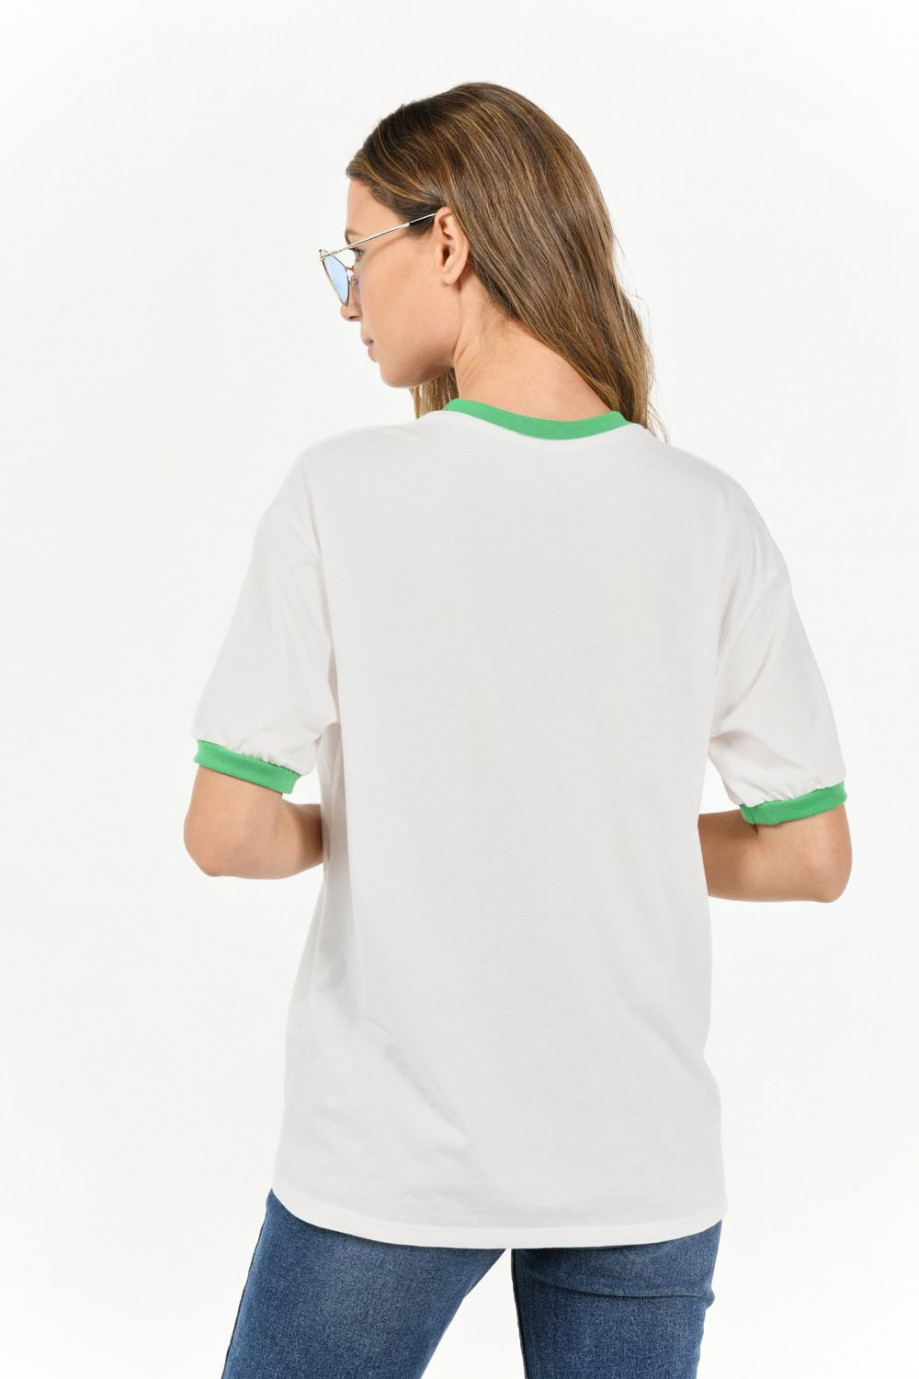 Camiseta manga corta con estampado en frente, con contraste en puños.